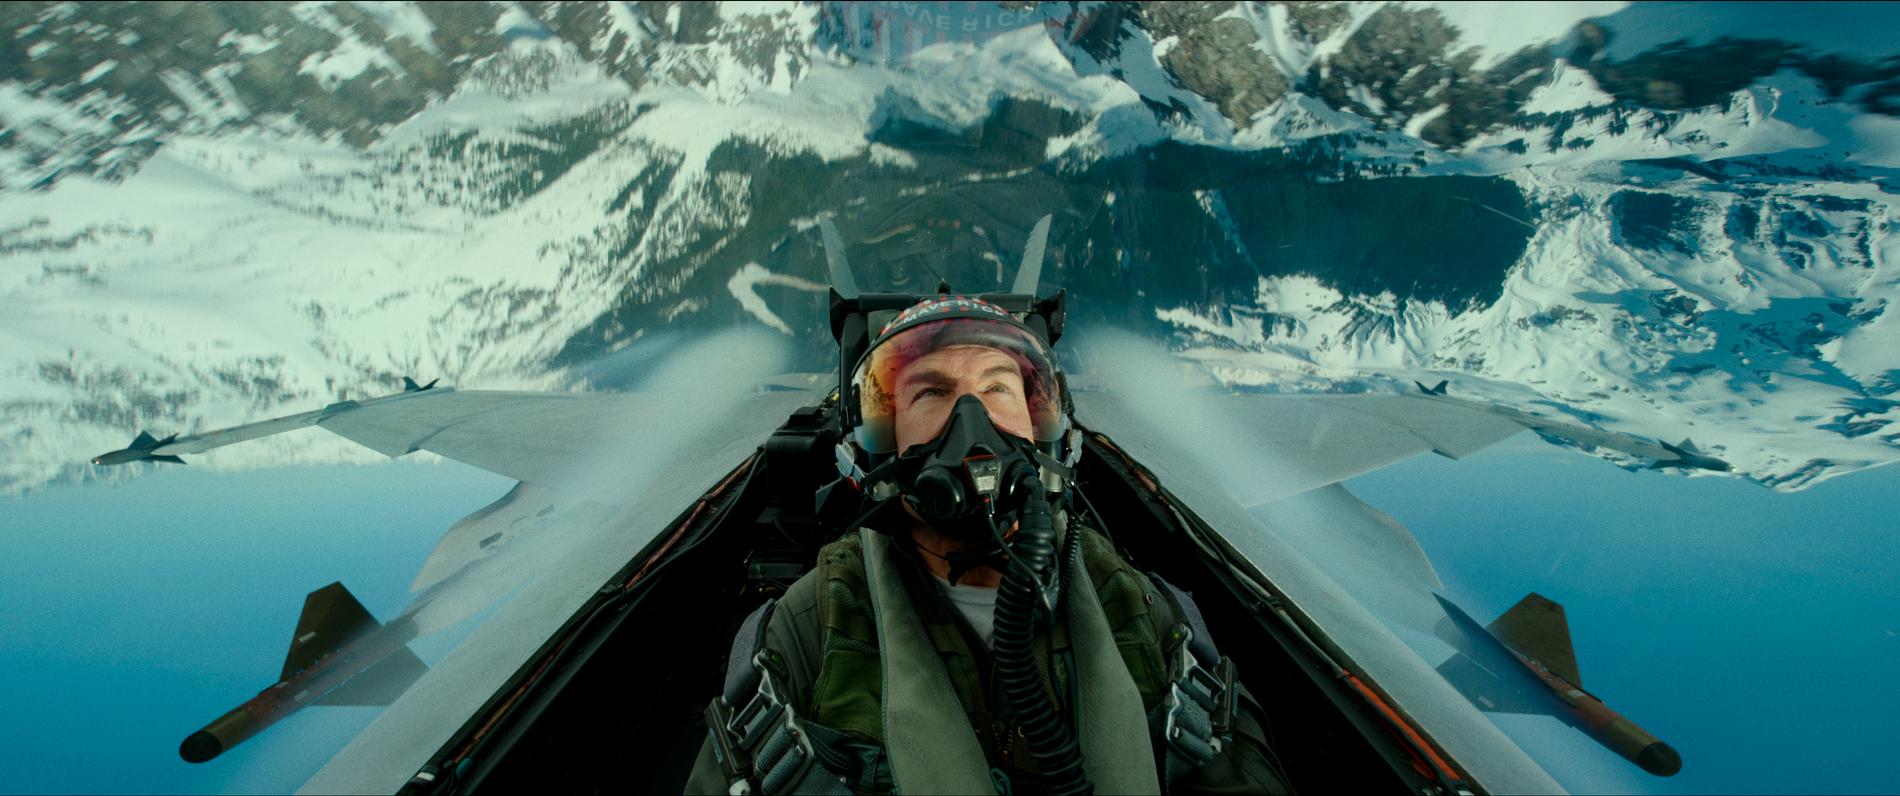 Tom Cruise och hans "Top gun: Maverick" kommer inte att flyga upp på bioduken förrän sommaren 2021.